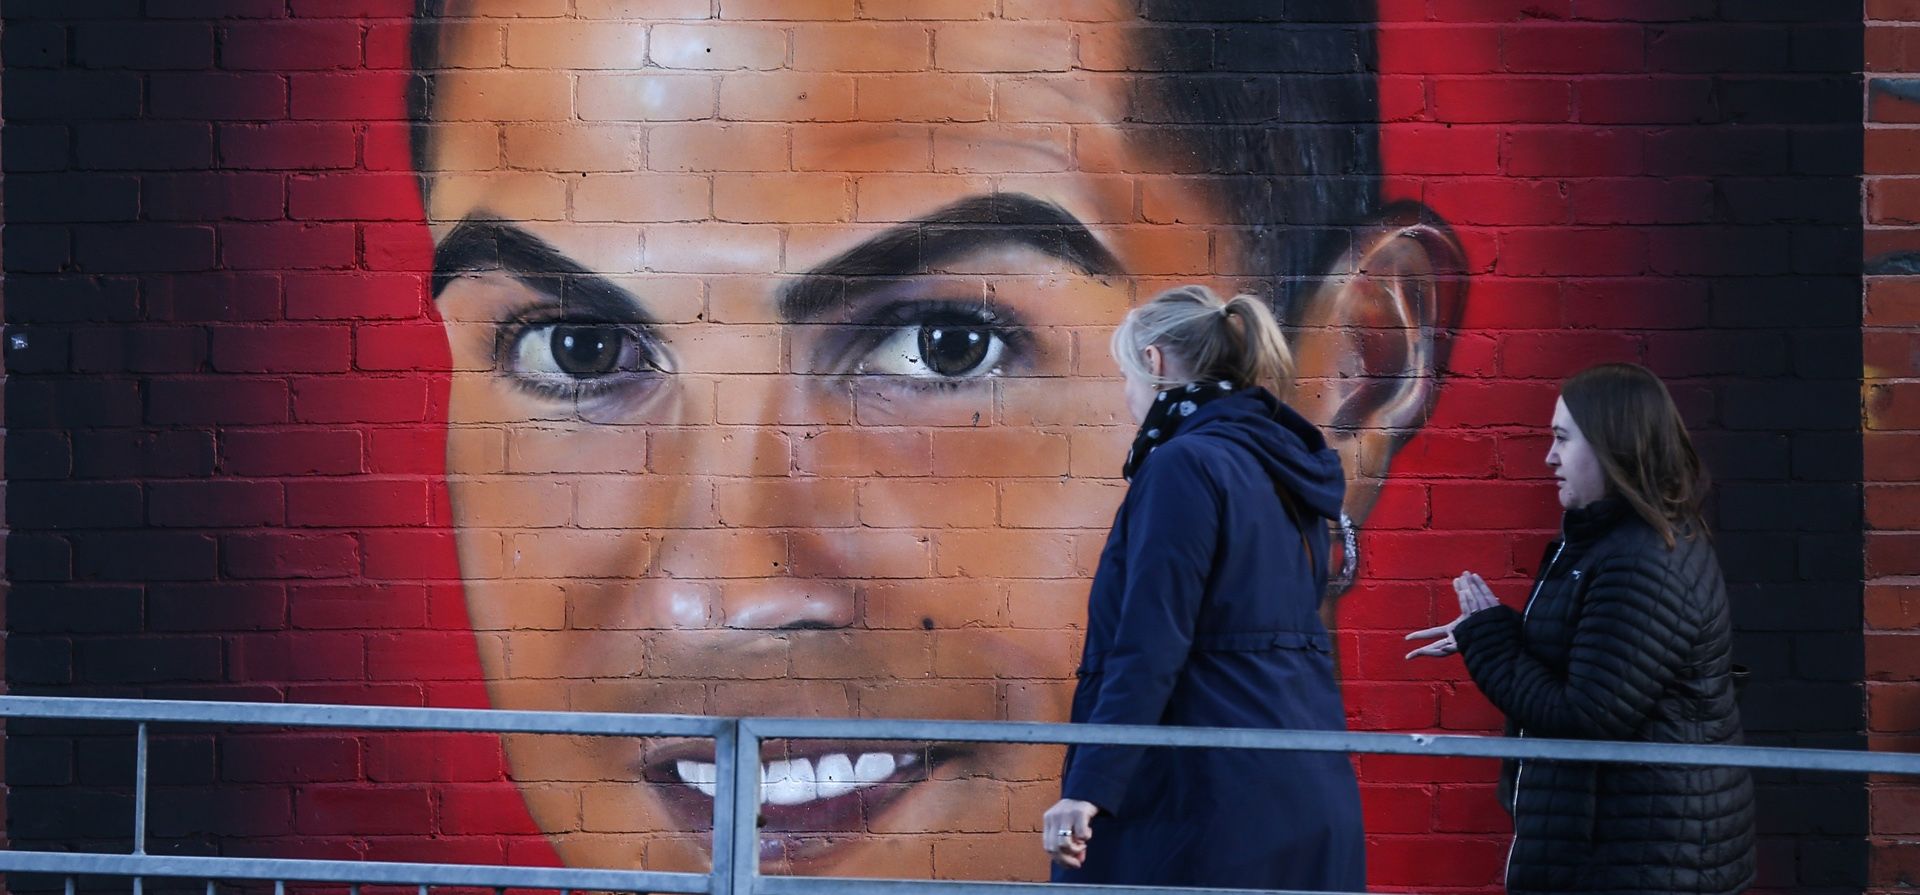 La gente pasa frente a un mural del exjugador del Manchester United, Cristiano Ronaldo, cerca de Old Trafford en Manchester, Gran Bretaña, el 23 de noviembre de 2022. Los propietarios del Manchester United, la familia Glazer, emitieron un comunicado en el que decían que 